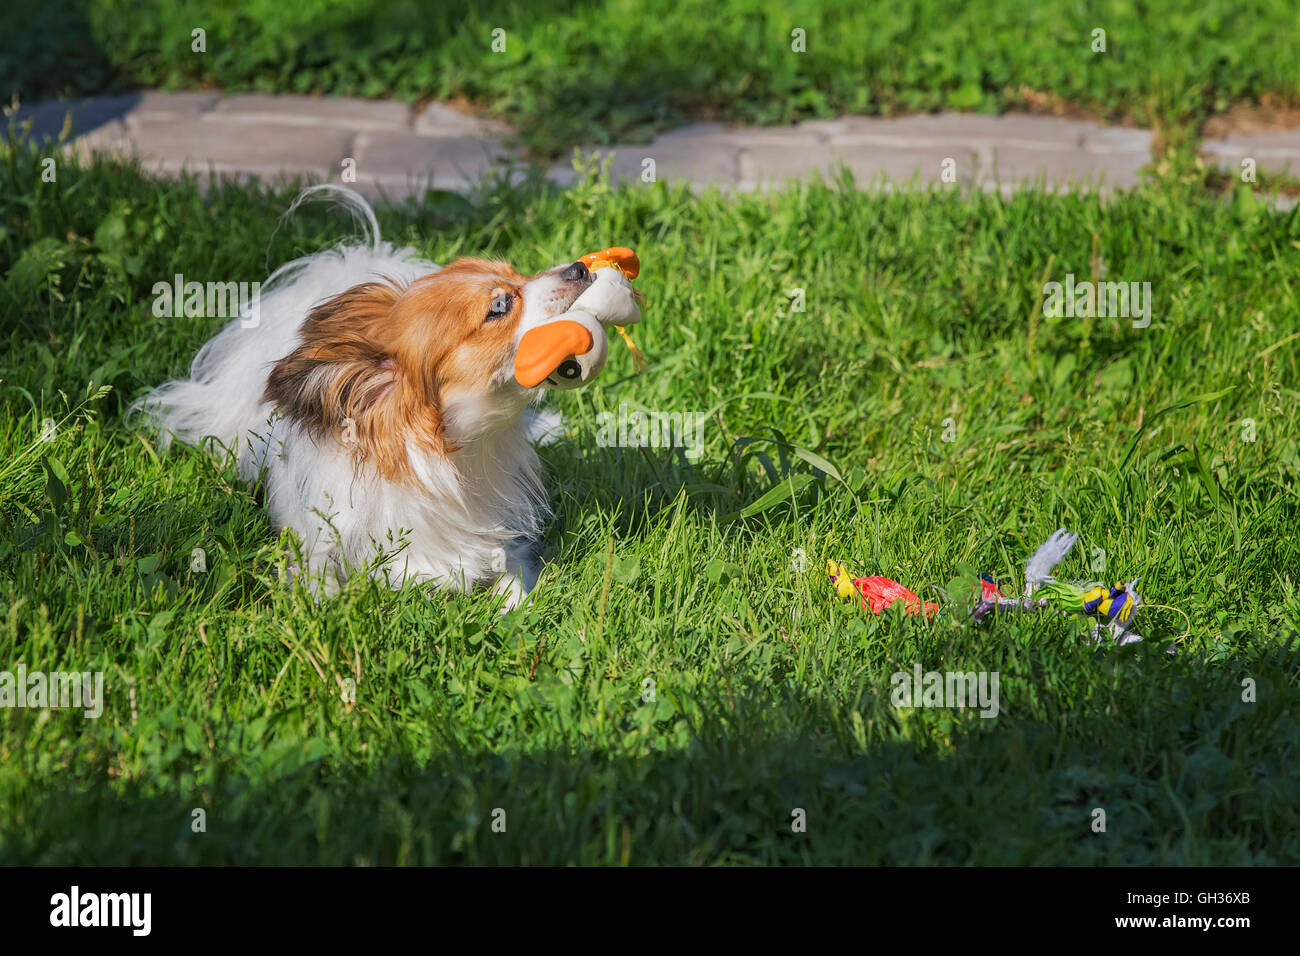 Papillon cane (Canis lupus familiaris) riproduzione di giocattoli di gomma sull'erba verde. Foto Stock